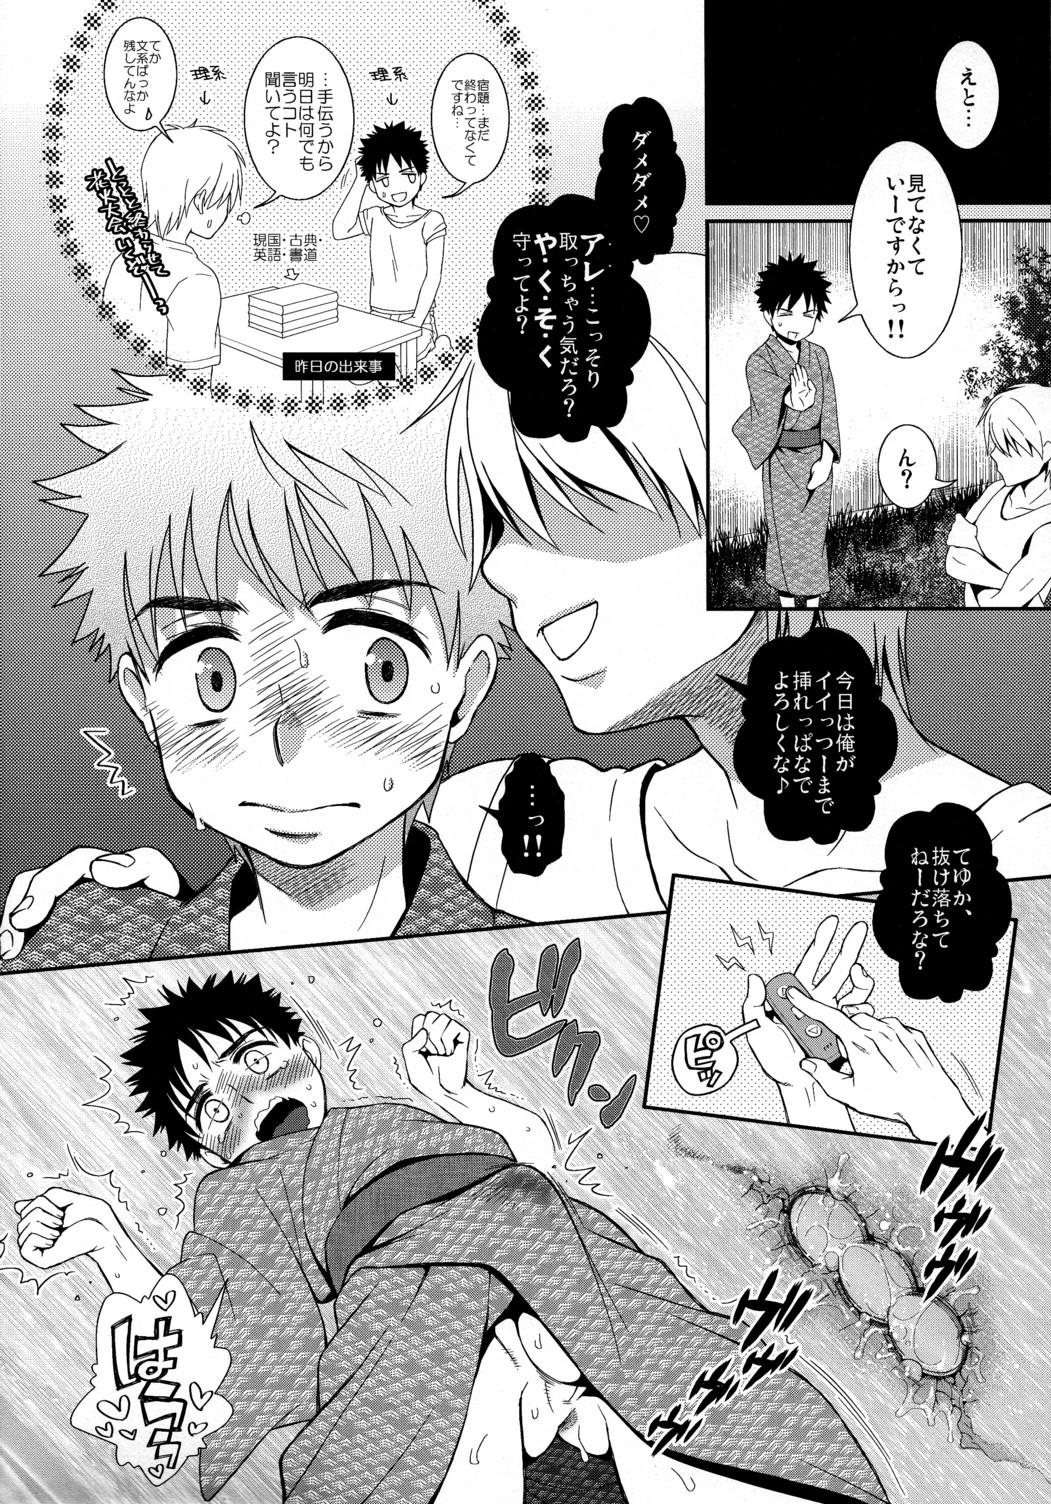 Step Mom Super Freak Takuya-kun! 3 - Ookiku furikabutte Huge - Page 6